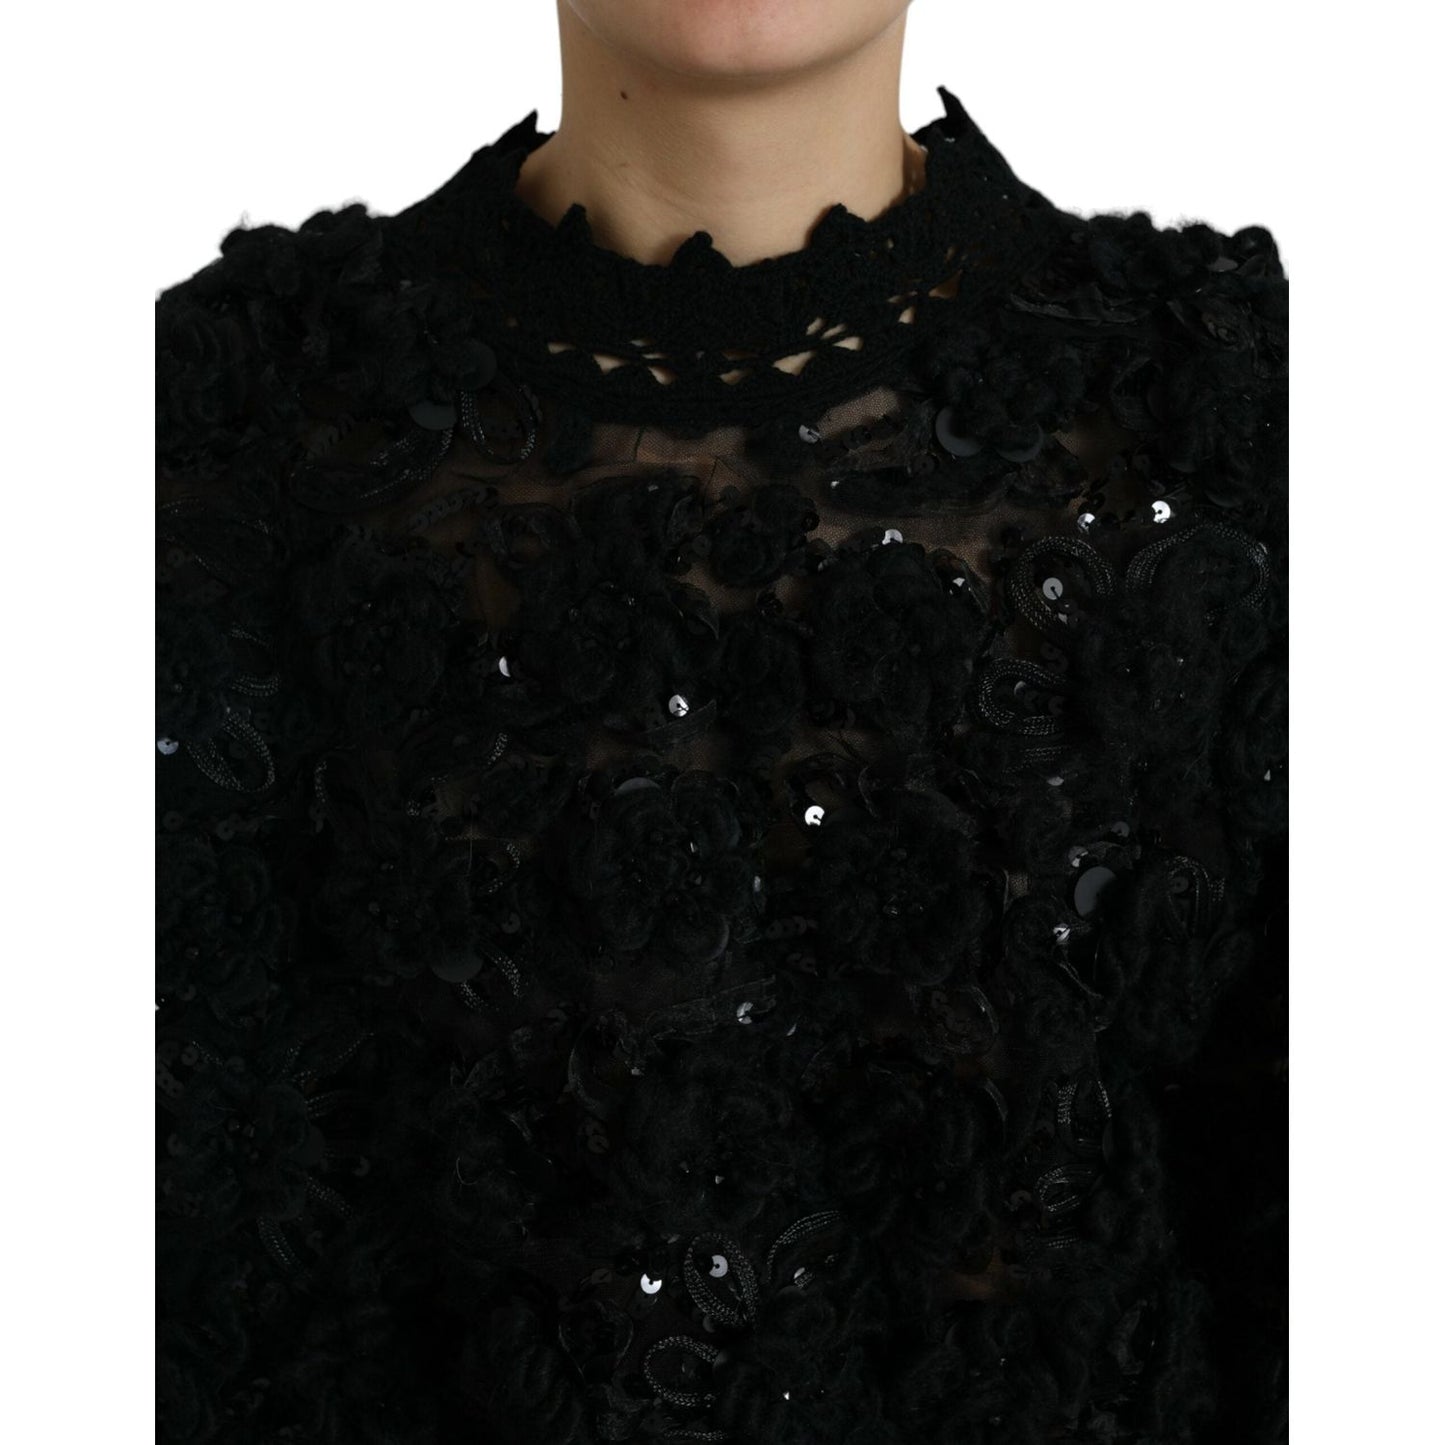 Dolce & GabbanaSequin Embellished Black PulloverMcRichard Designer Brands£1489.00